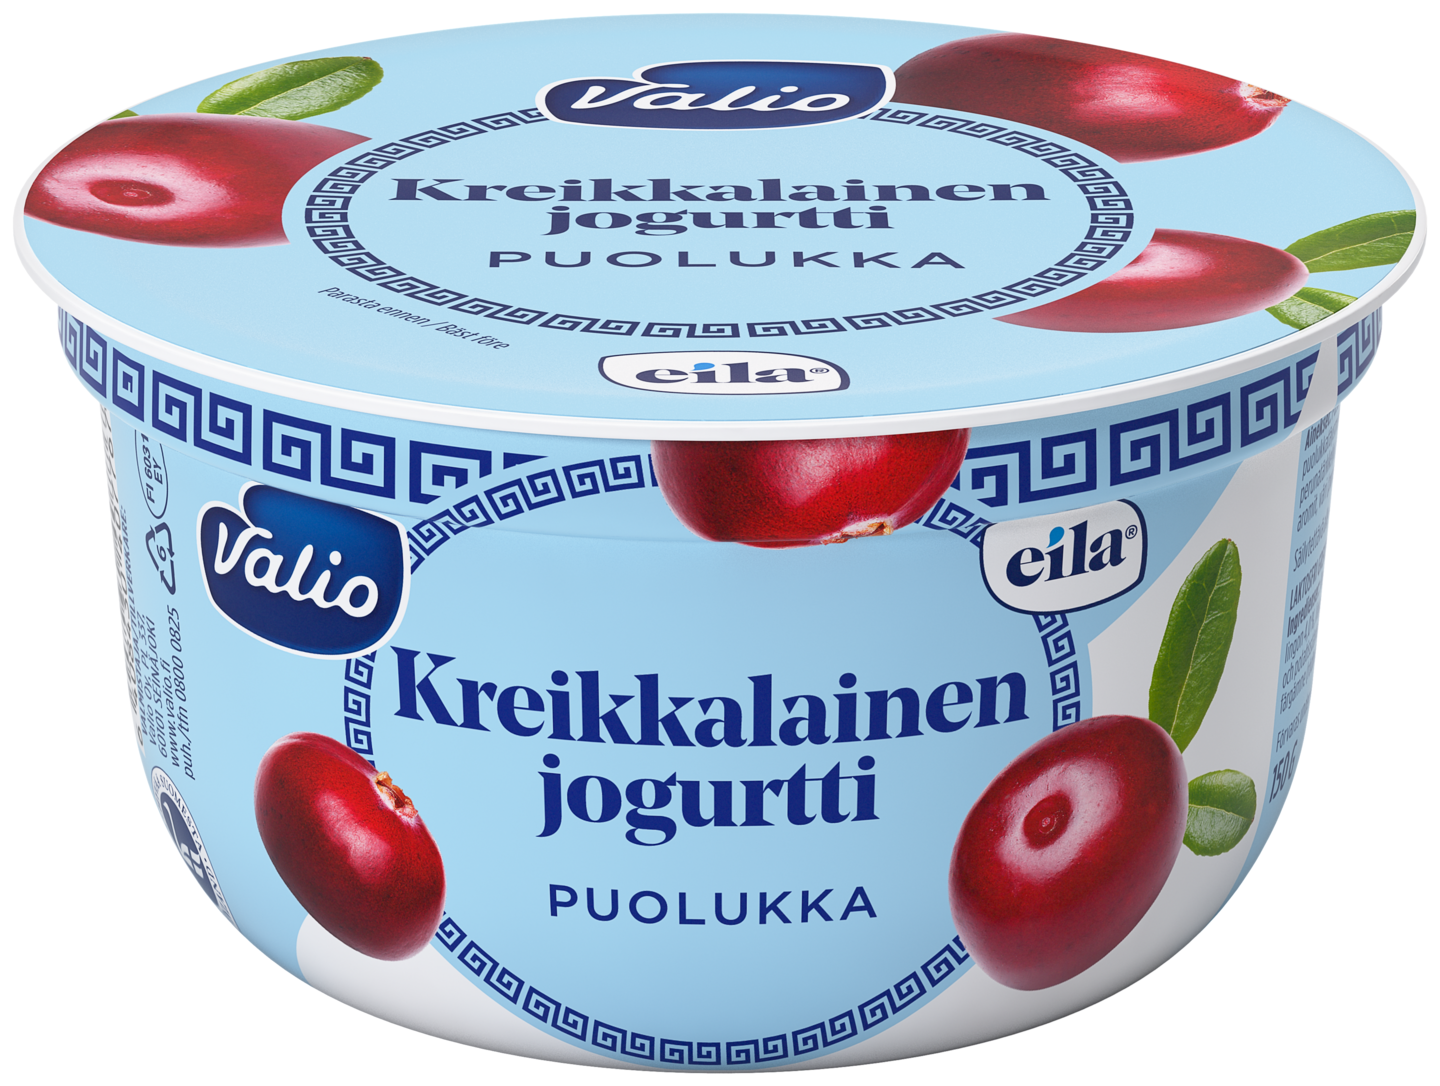 Valio kreikkalainen jogurtti 150 g puolukka laktoositon